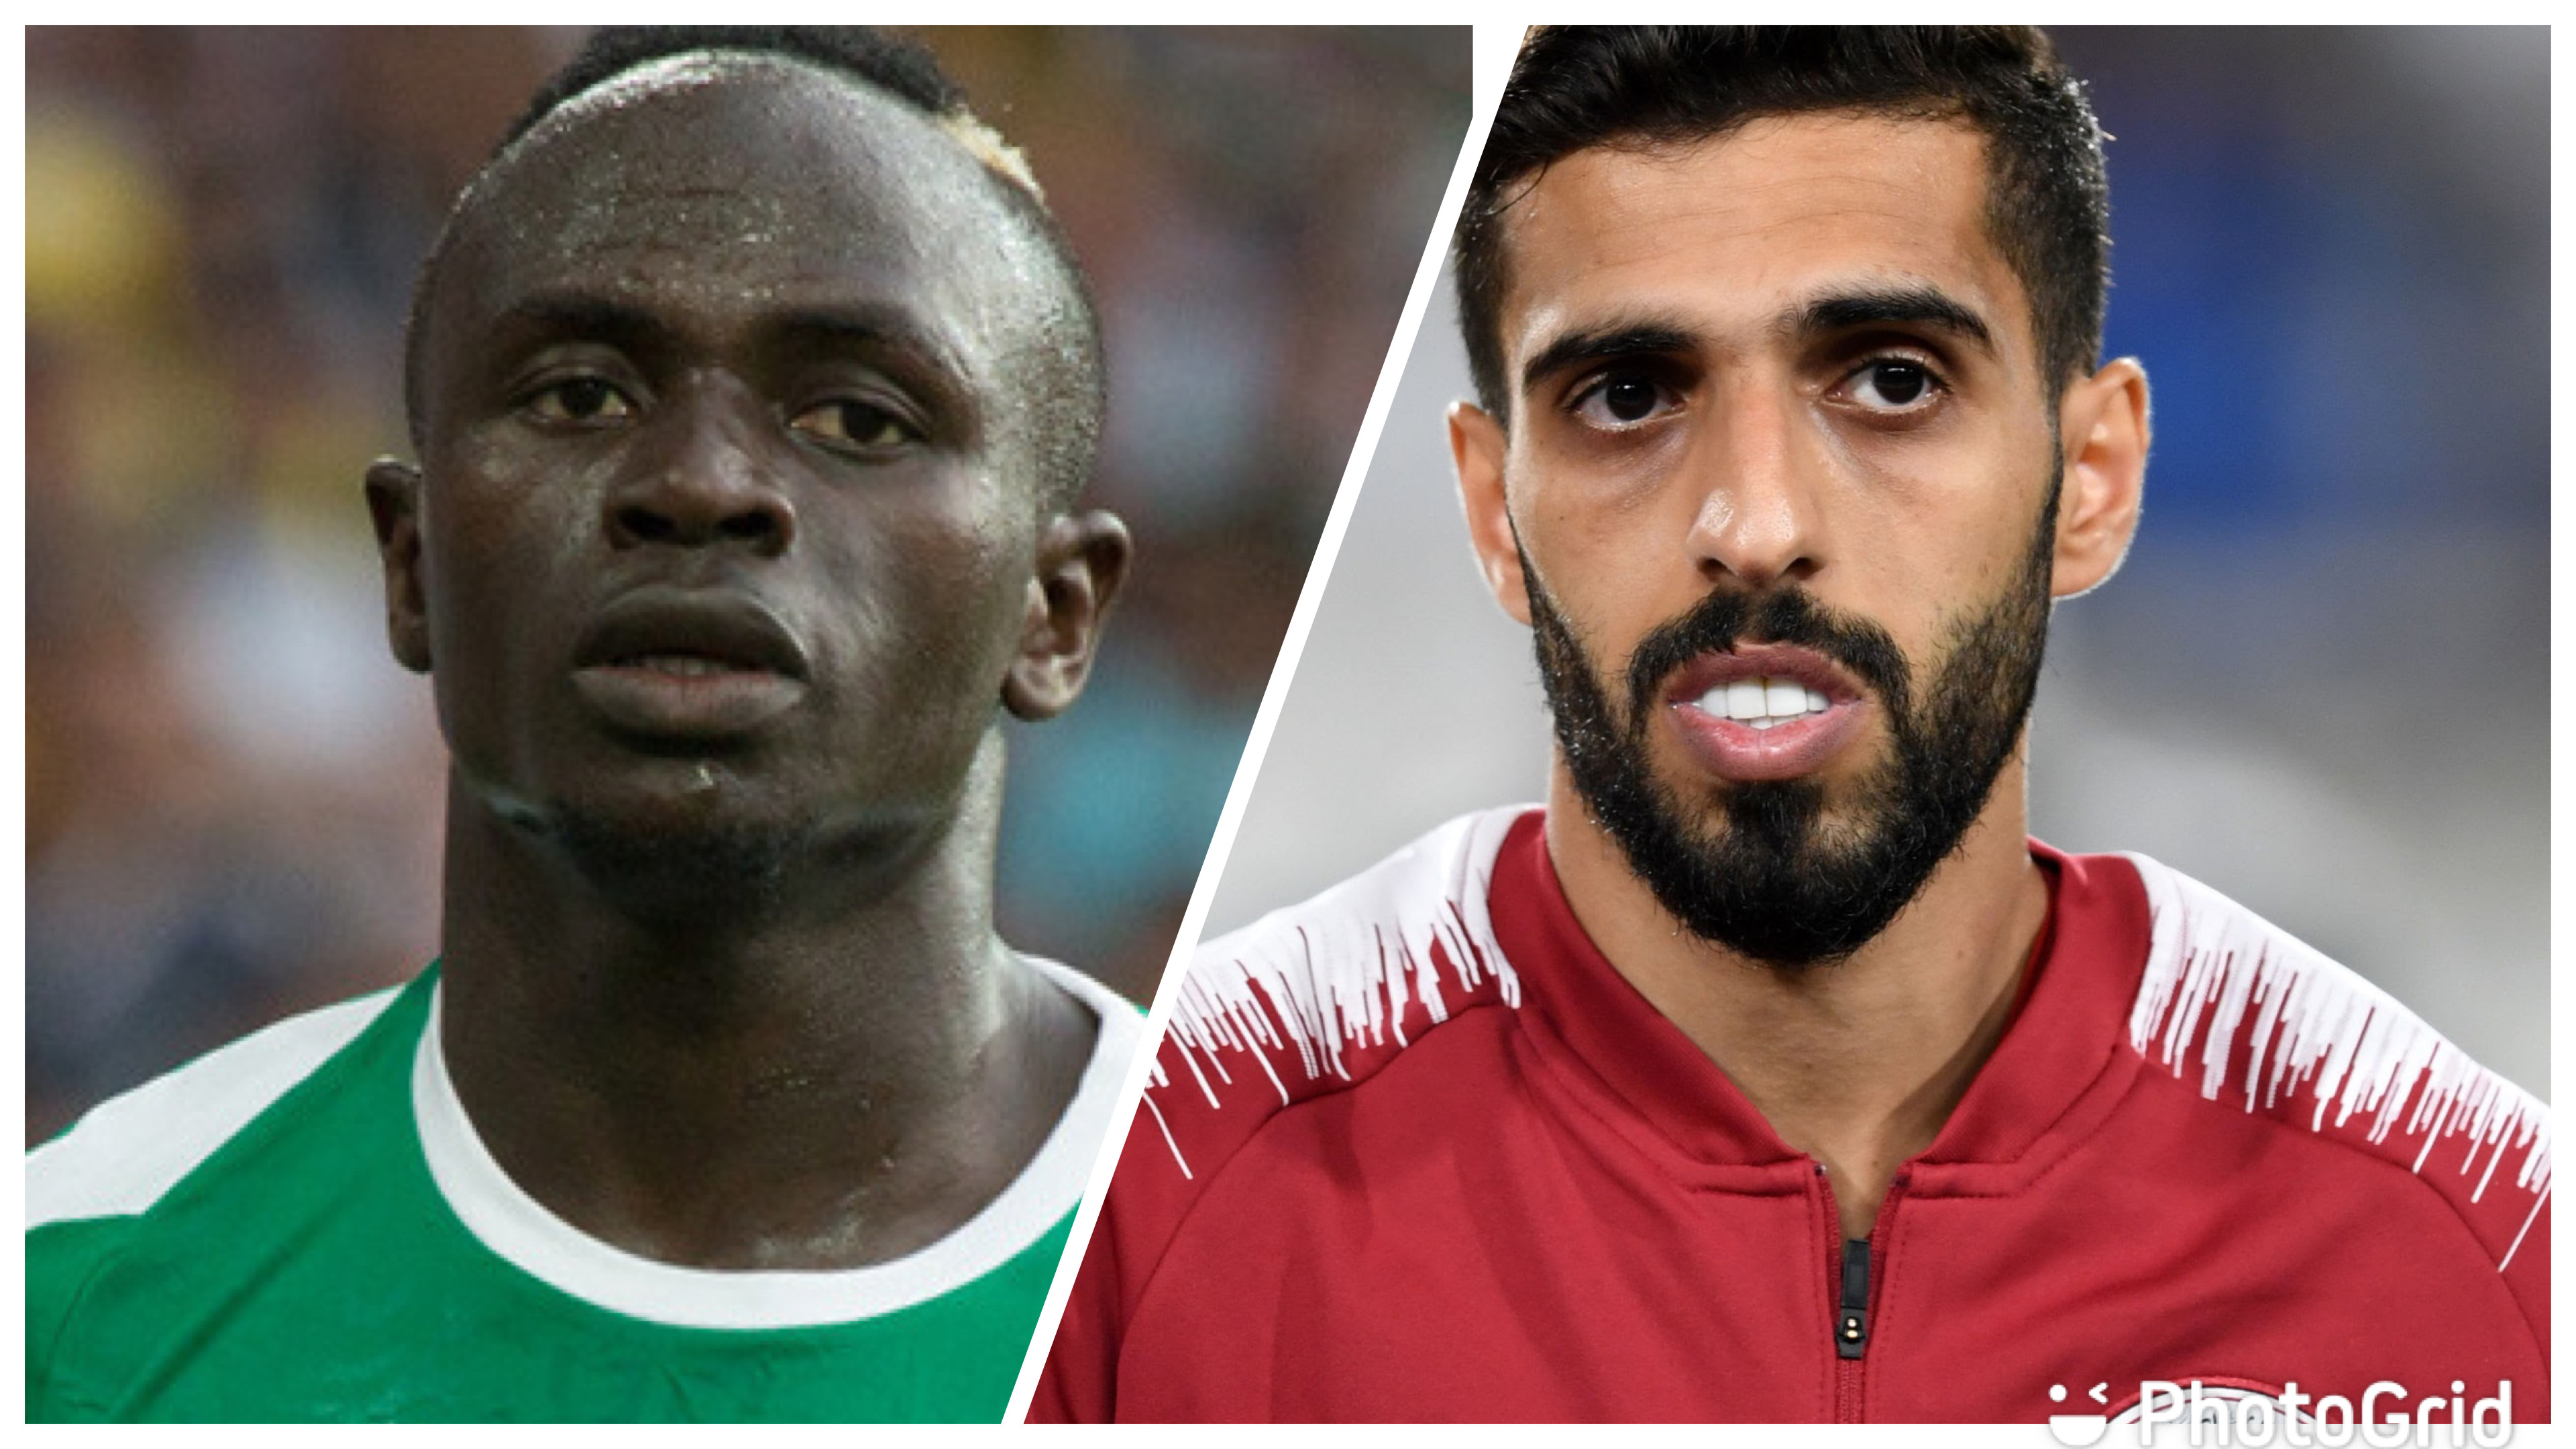 Qatar 2022 : Le Sénégal retrouve le pays hôte, champion d’Asie en 2019 et meilleure défense dudit tournoi